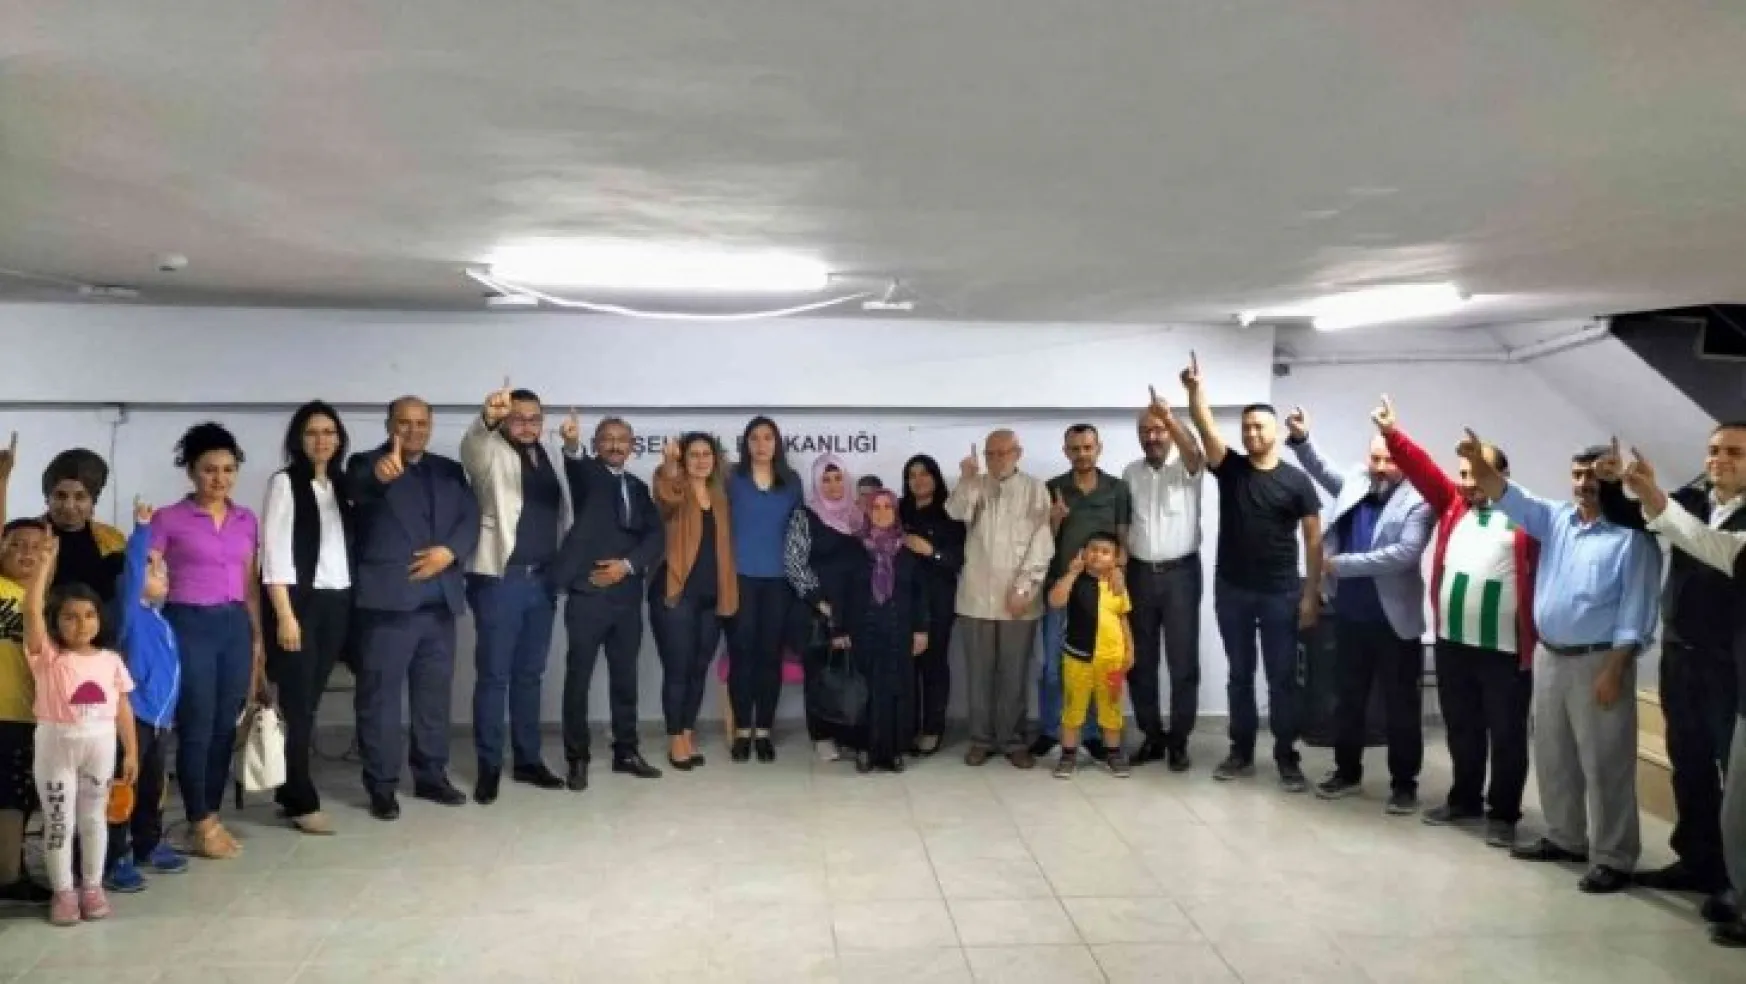 Milli Yol Partisi Kırşehir Teşkilatı 'Ahde Vefa' gecesi düzenledi